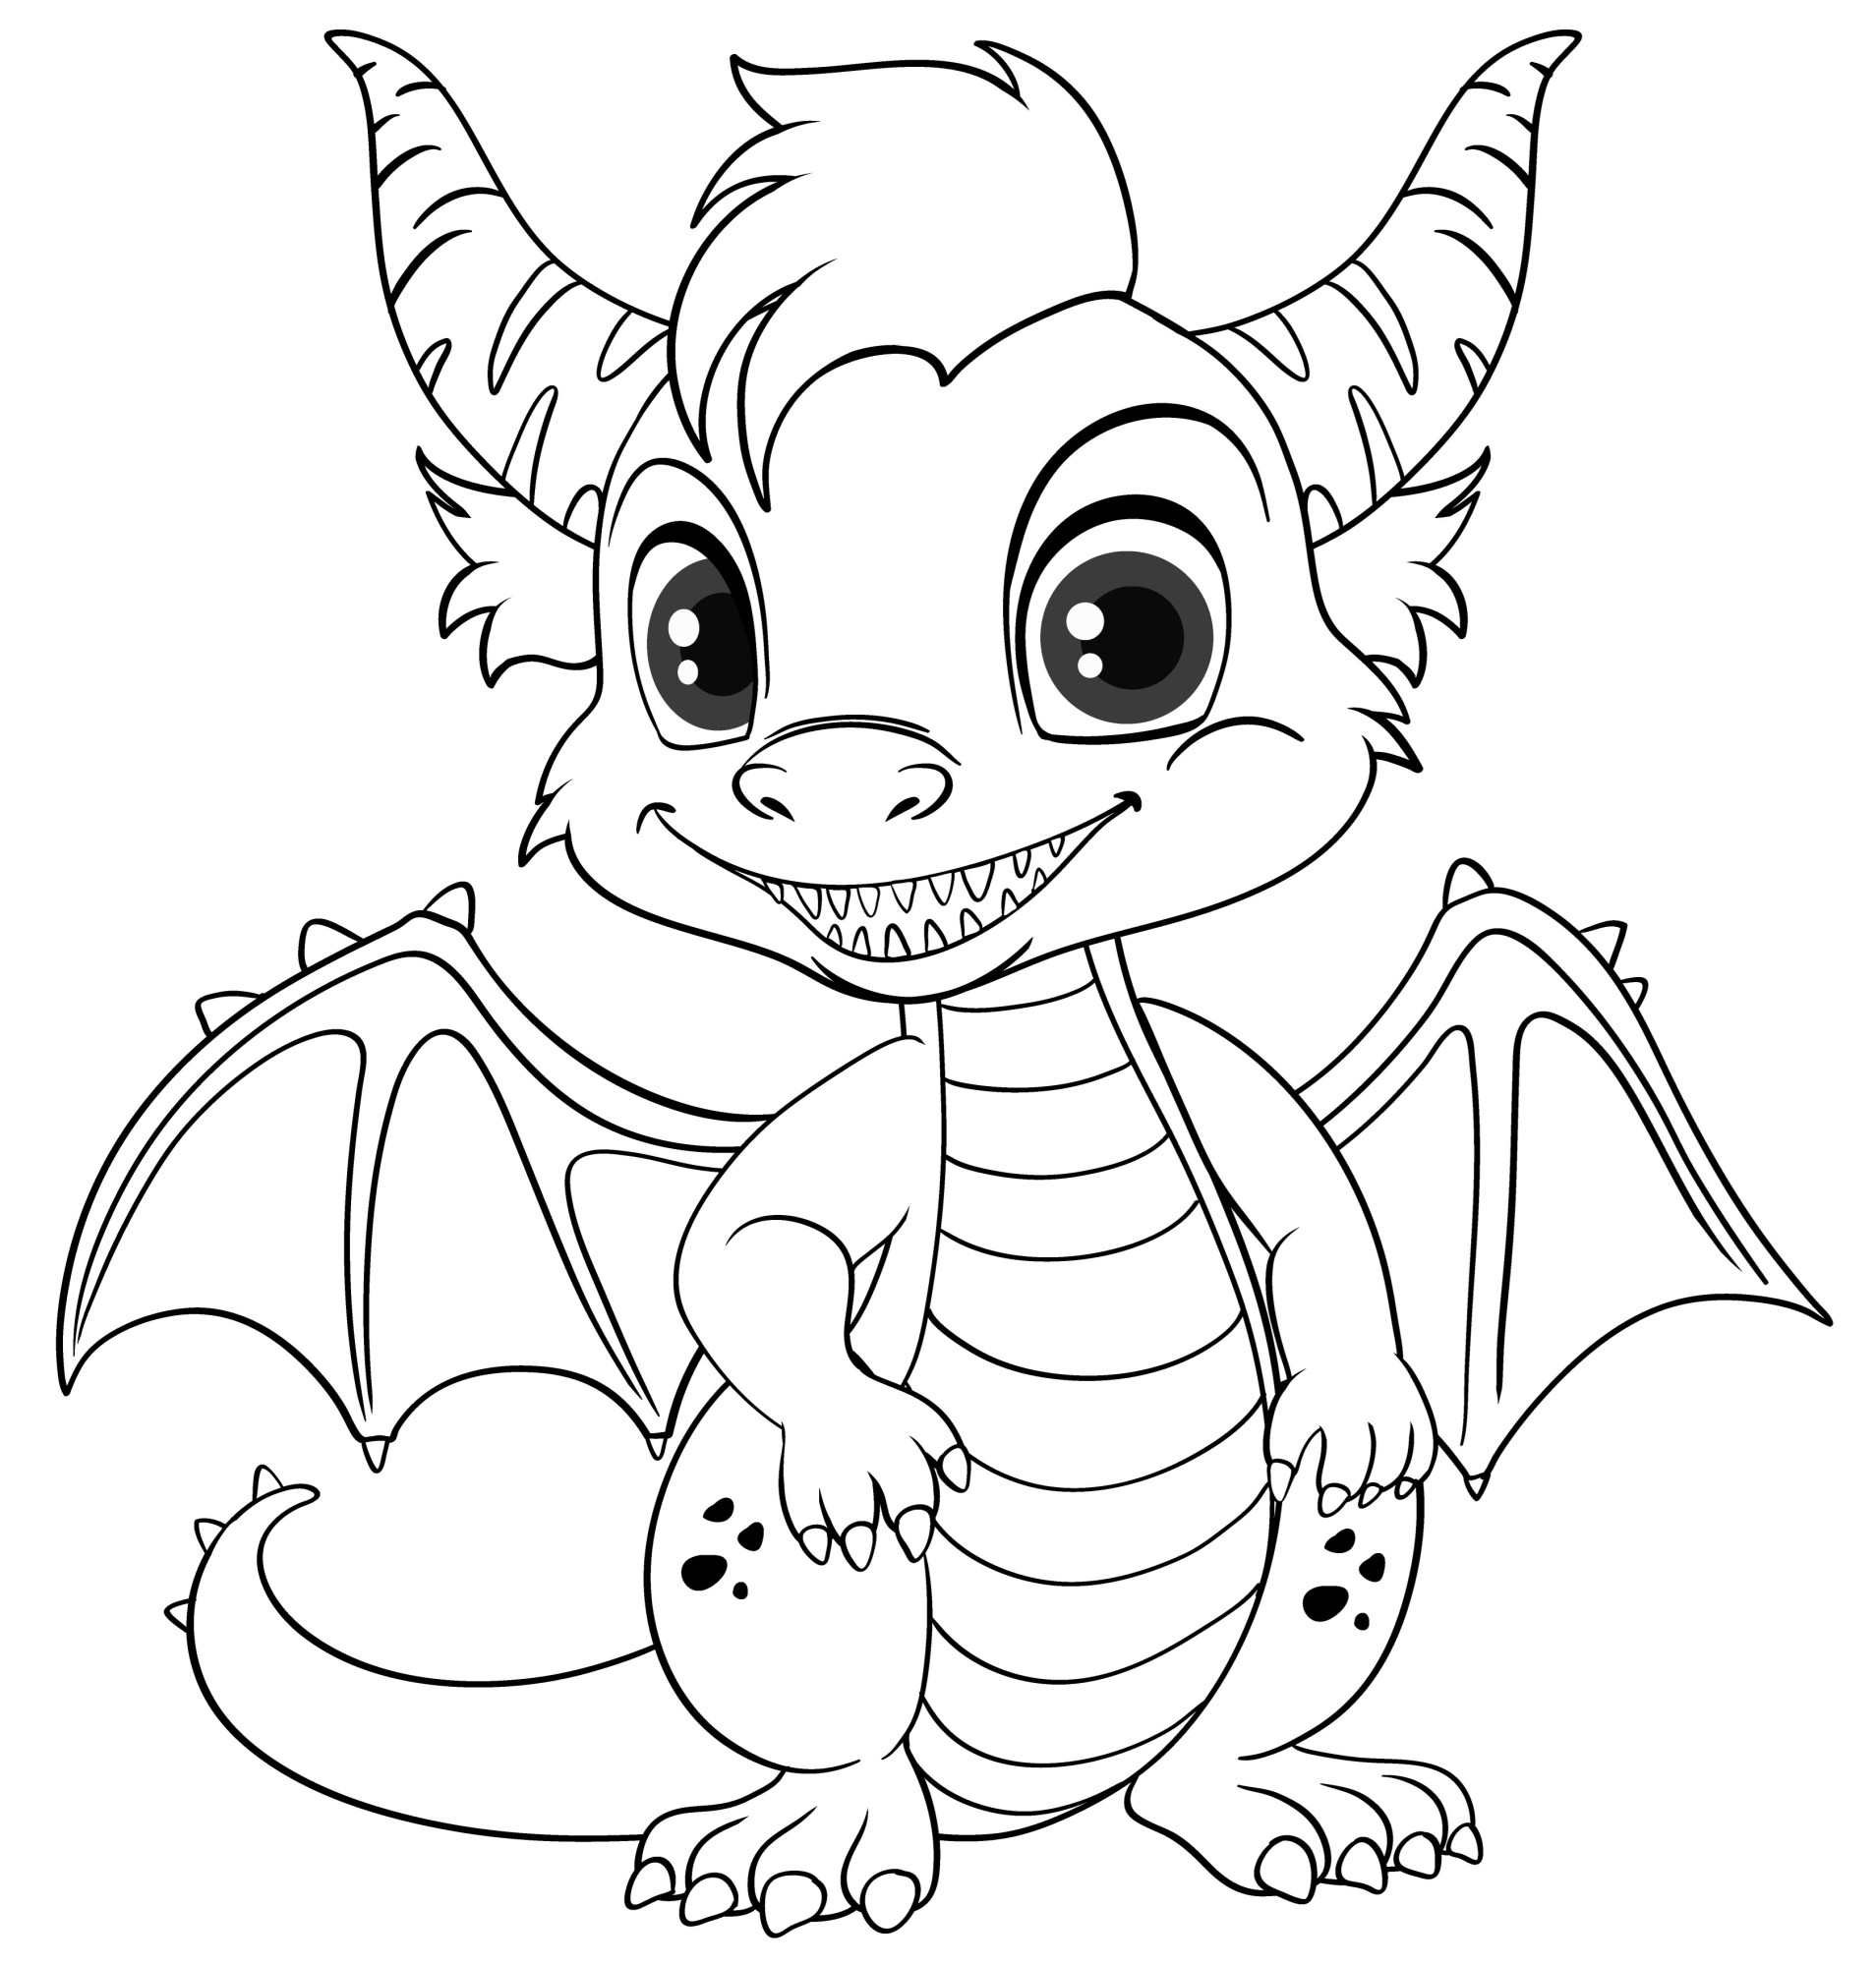 Раскраска для детей: дракон с крыльями и рогами